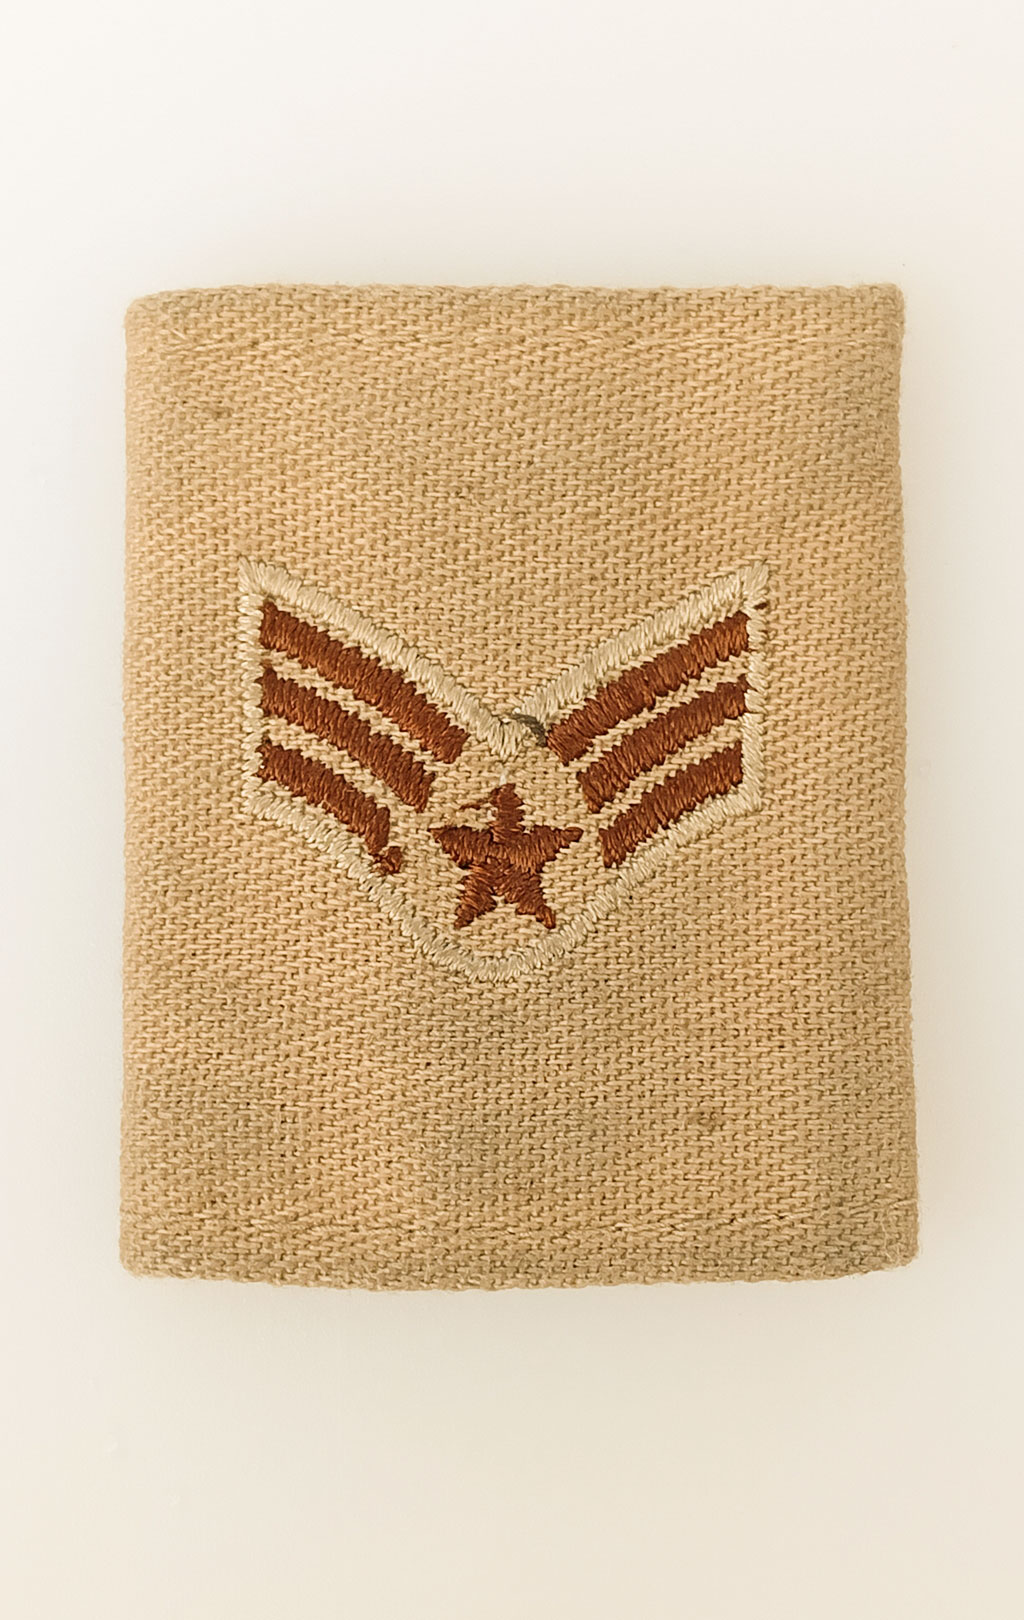 Нашивка-звание нагрудный погон USAF SENIOR AIRMAN khaki #5015 США